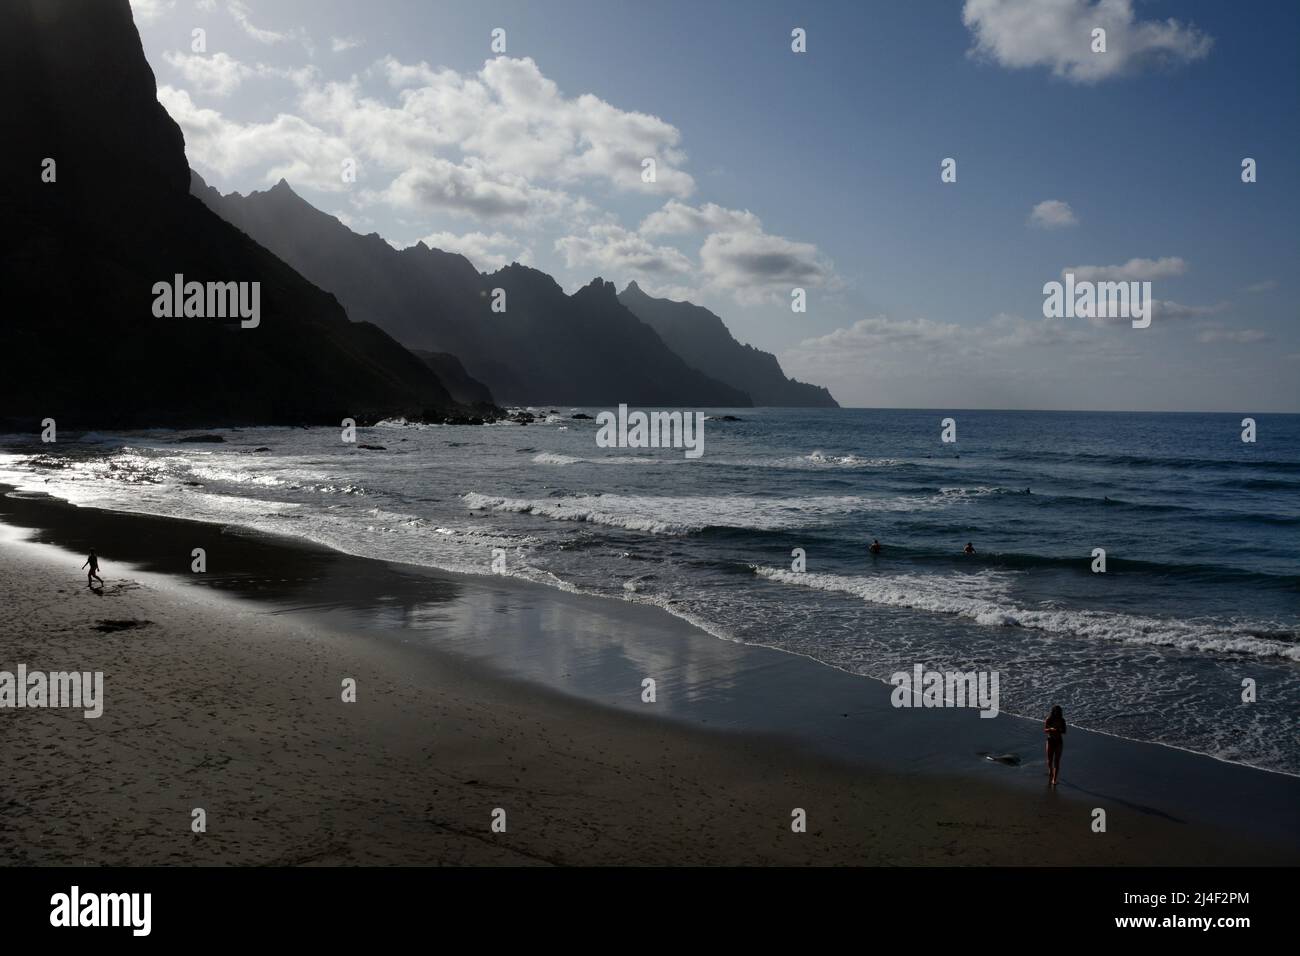 Les touristes nageant à la plage Playa del Roque de las Bodegas sur l'océan Atlantique, montagnes Anaga, près de Taganana, Tenerife, îles Canaries, Espagne. Banque D'Images